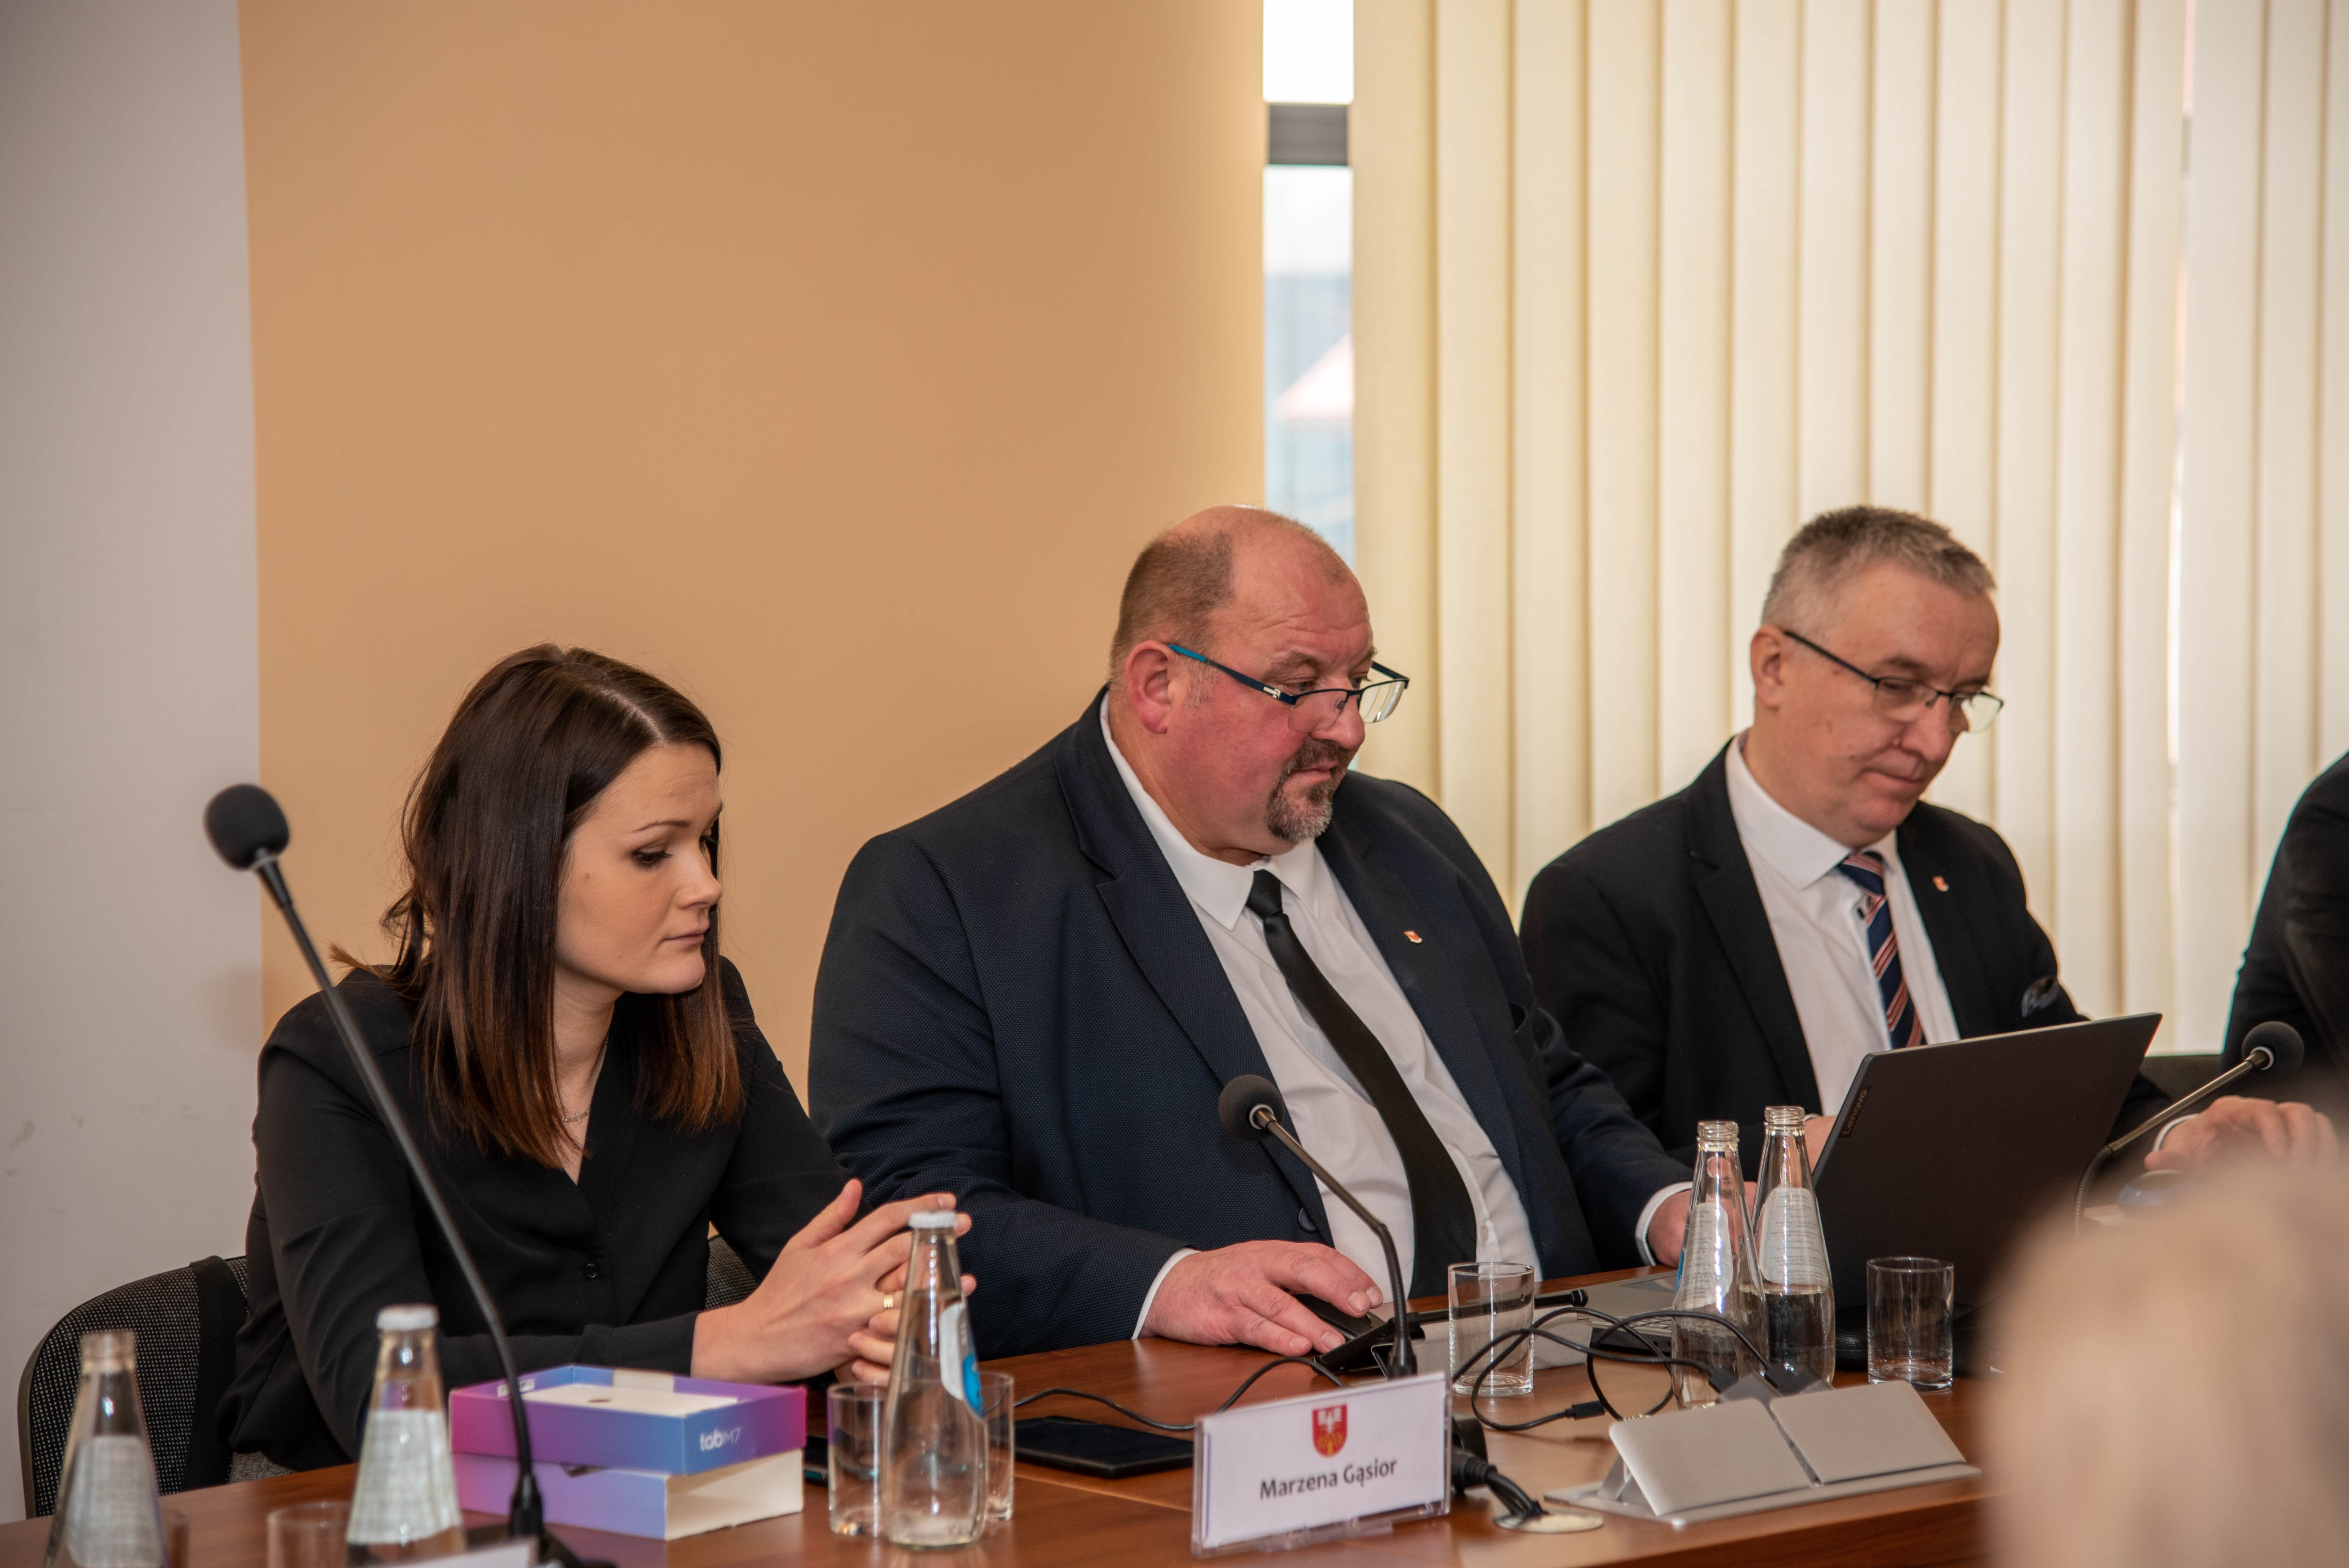 członkowie zarządu Powiatu Limanowskiego Józef Jaworski i Czesław Kawalec oraz radna powiatu Marzenna Gąsior podczas obrad sesji